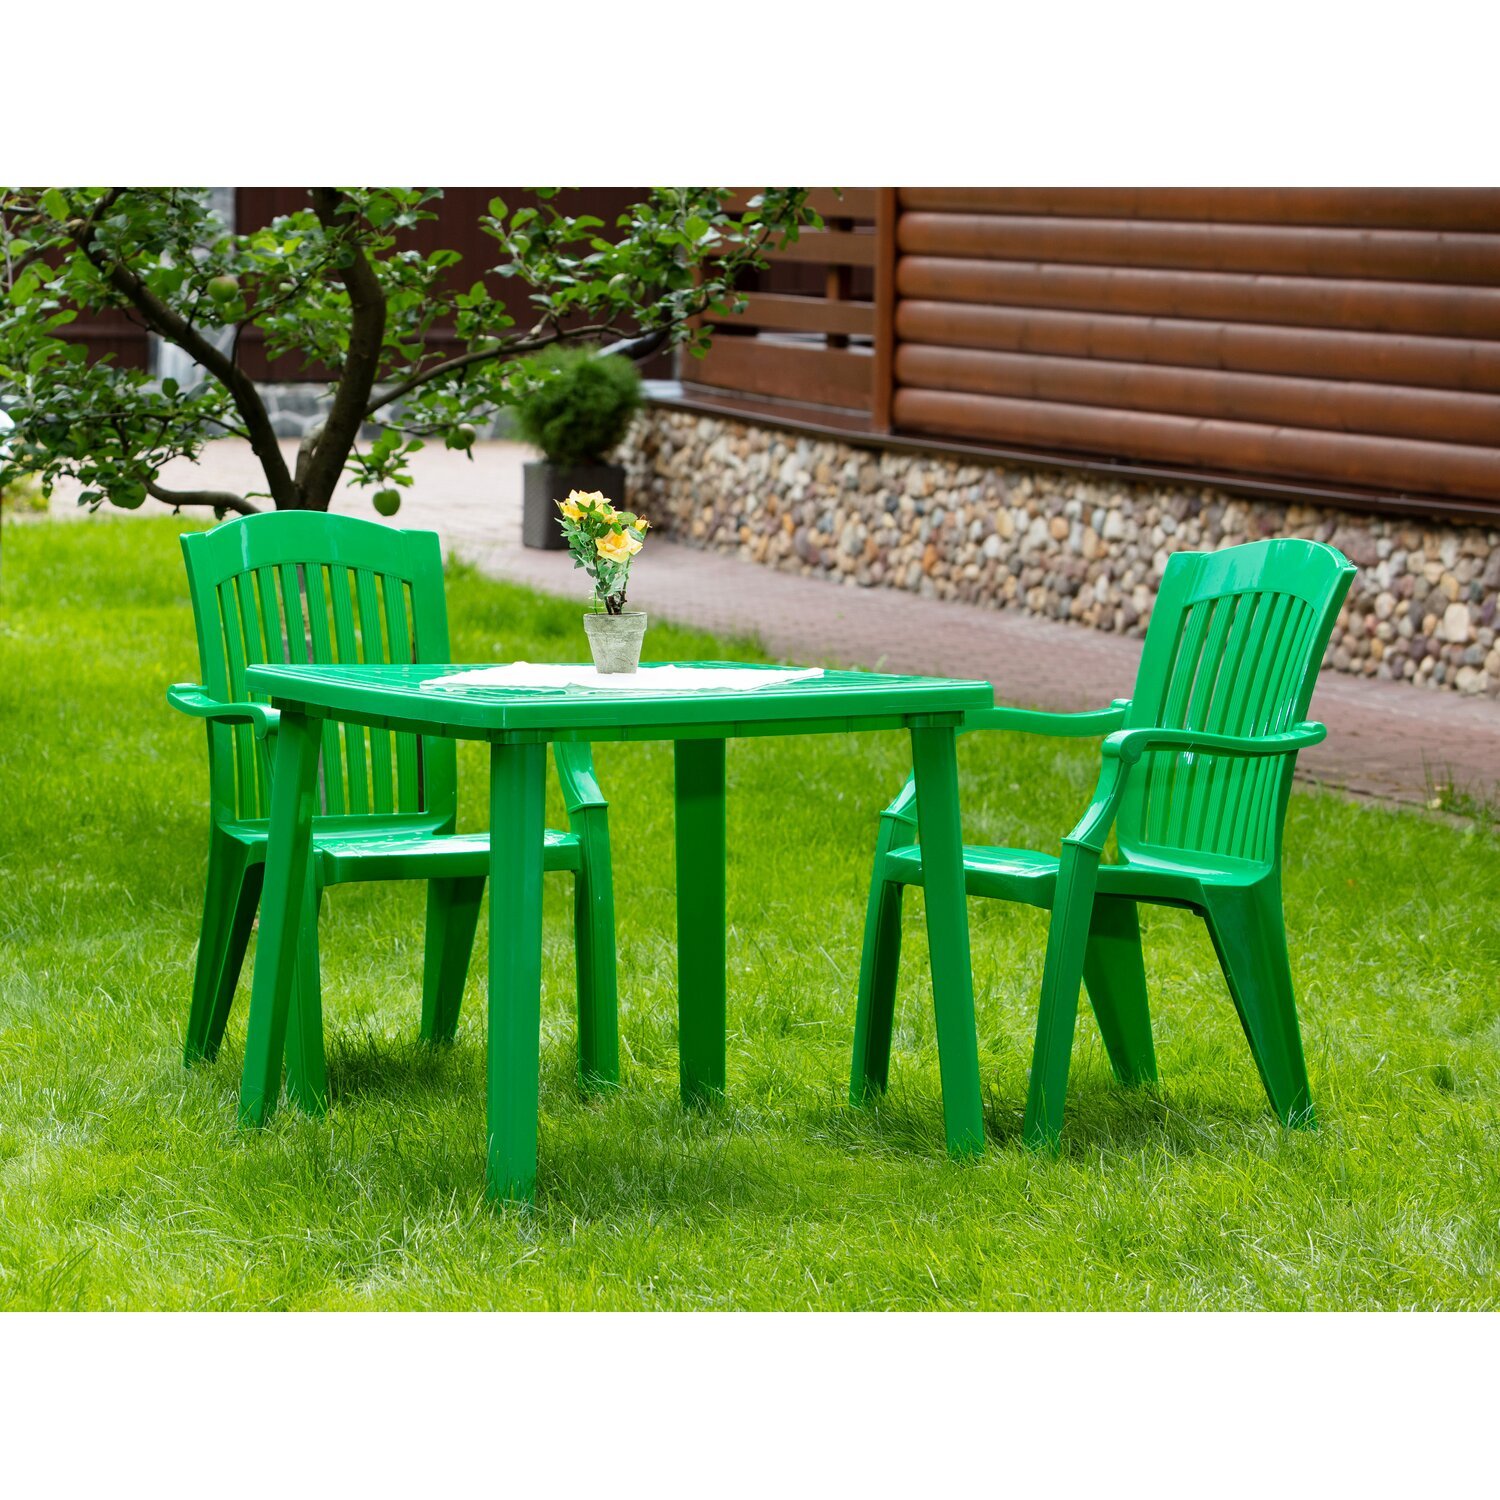 Магазины пластиковая мебель. Кресло садовое зелёное 567x825x578 мм, пластик. Кресло садовое белое 567x825x578 мм, пластик. Стол дачный пластиковый. Садовые столы и стулья пластиковые.